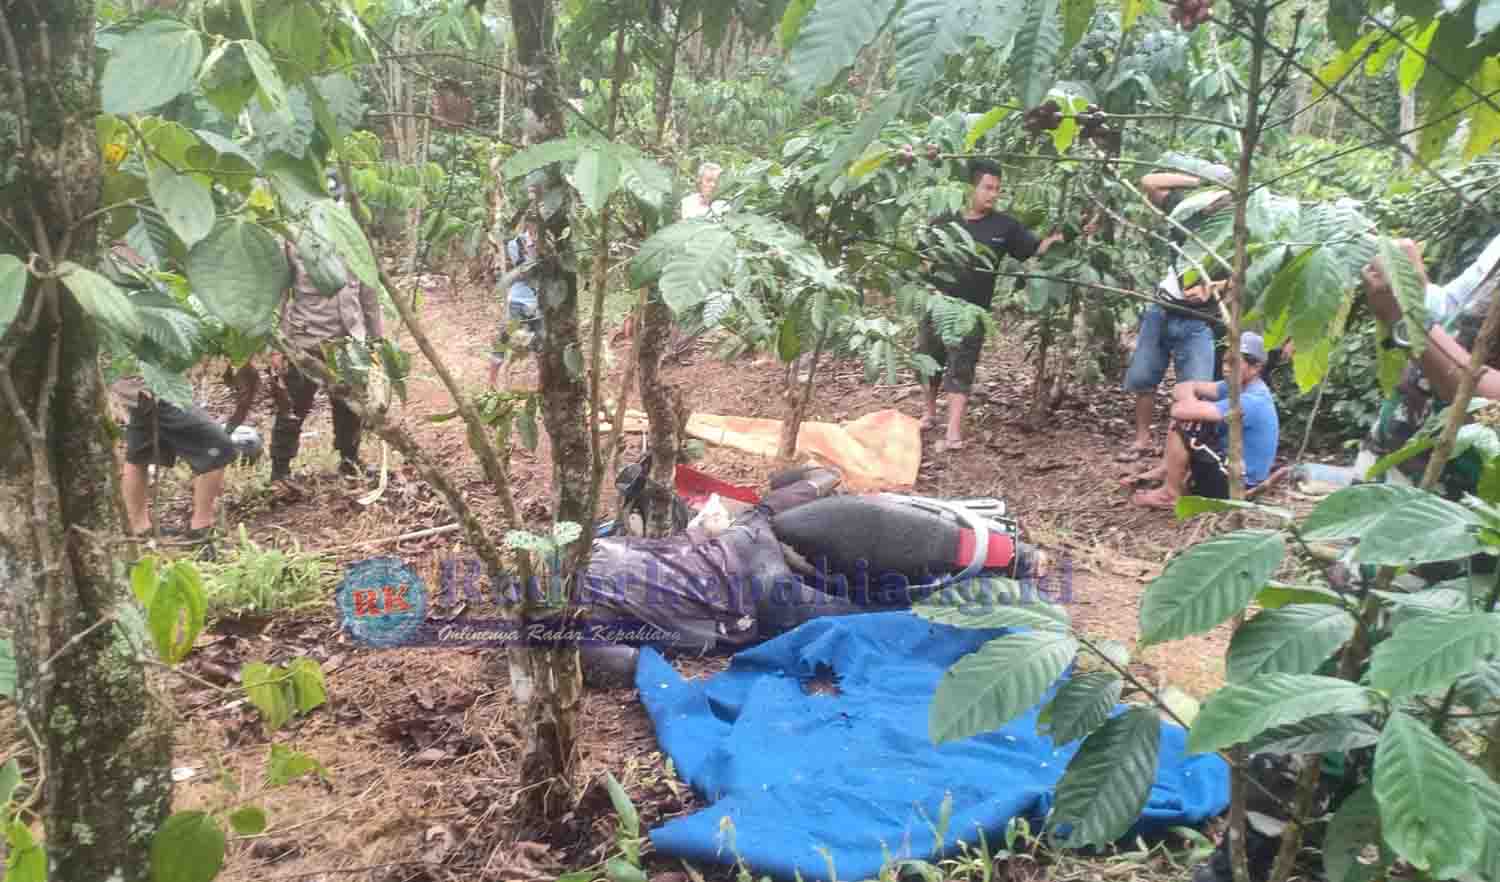 BREAKING NEWS: Petani Asal Padang lekat Ditemukan Tewas di Kebun Kopi